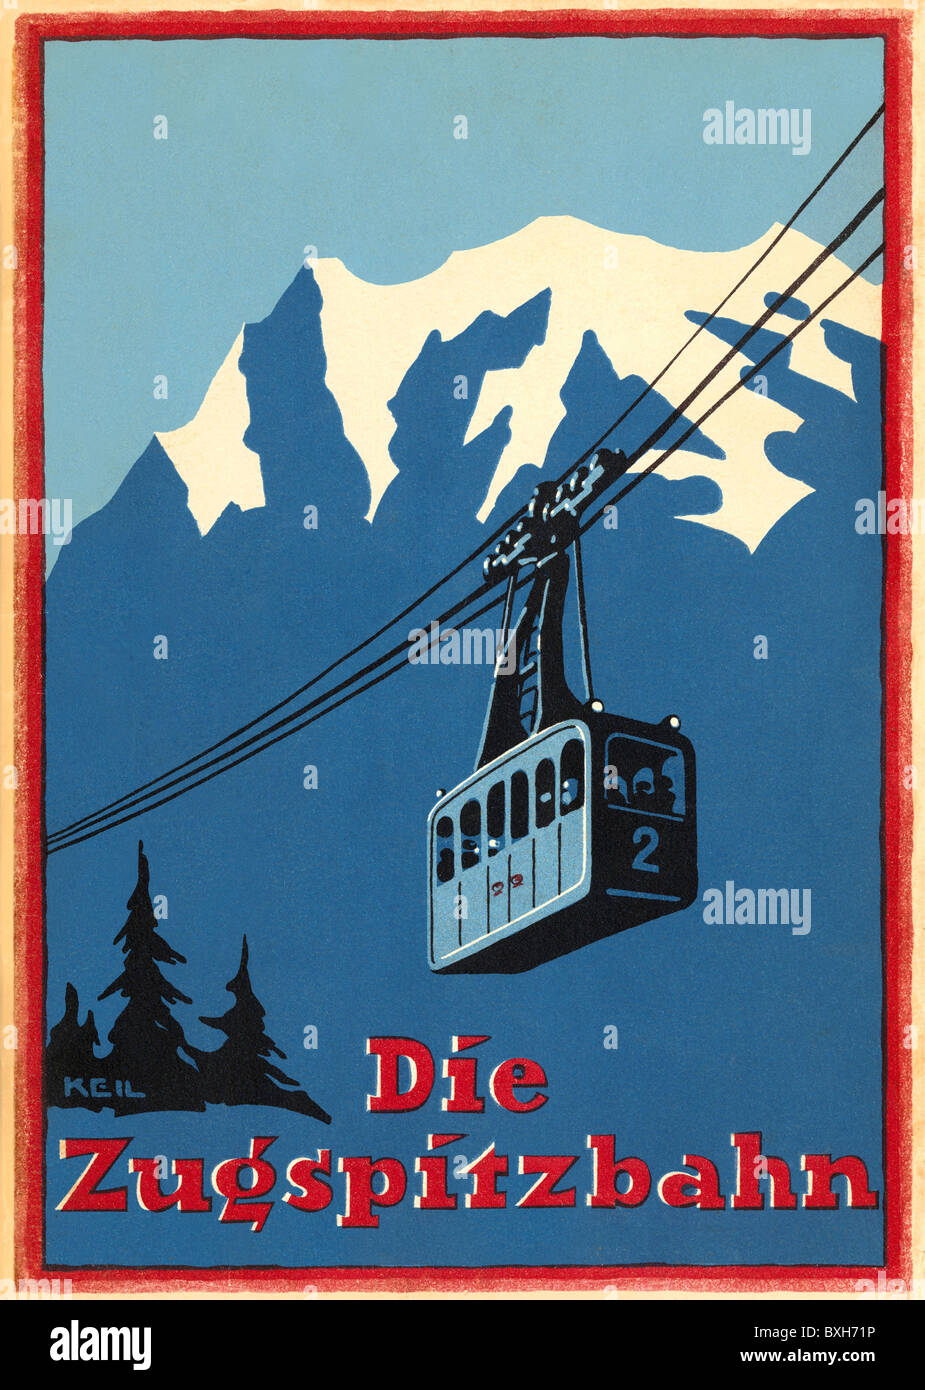 Tourismus, Zugspitzbahn, Bayerische Zugspitzbahn, Werbebroschüre von Adolf Bleichert u. Co, Leipzig, Deutschland, 1924, Zusätzliche-Rechte-Clearenzen-Nicht Verfügbar Stockfoto